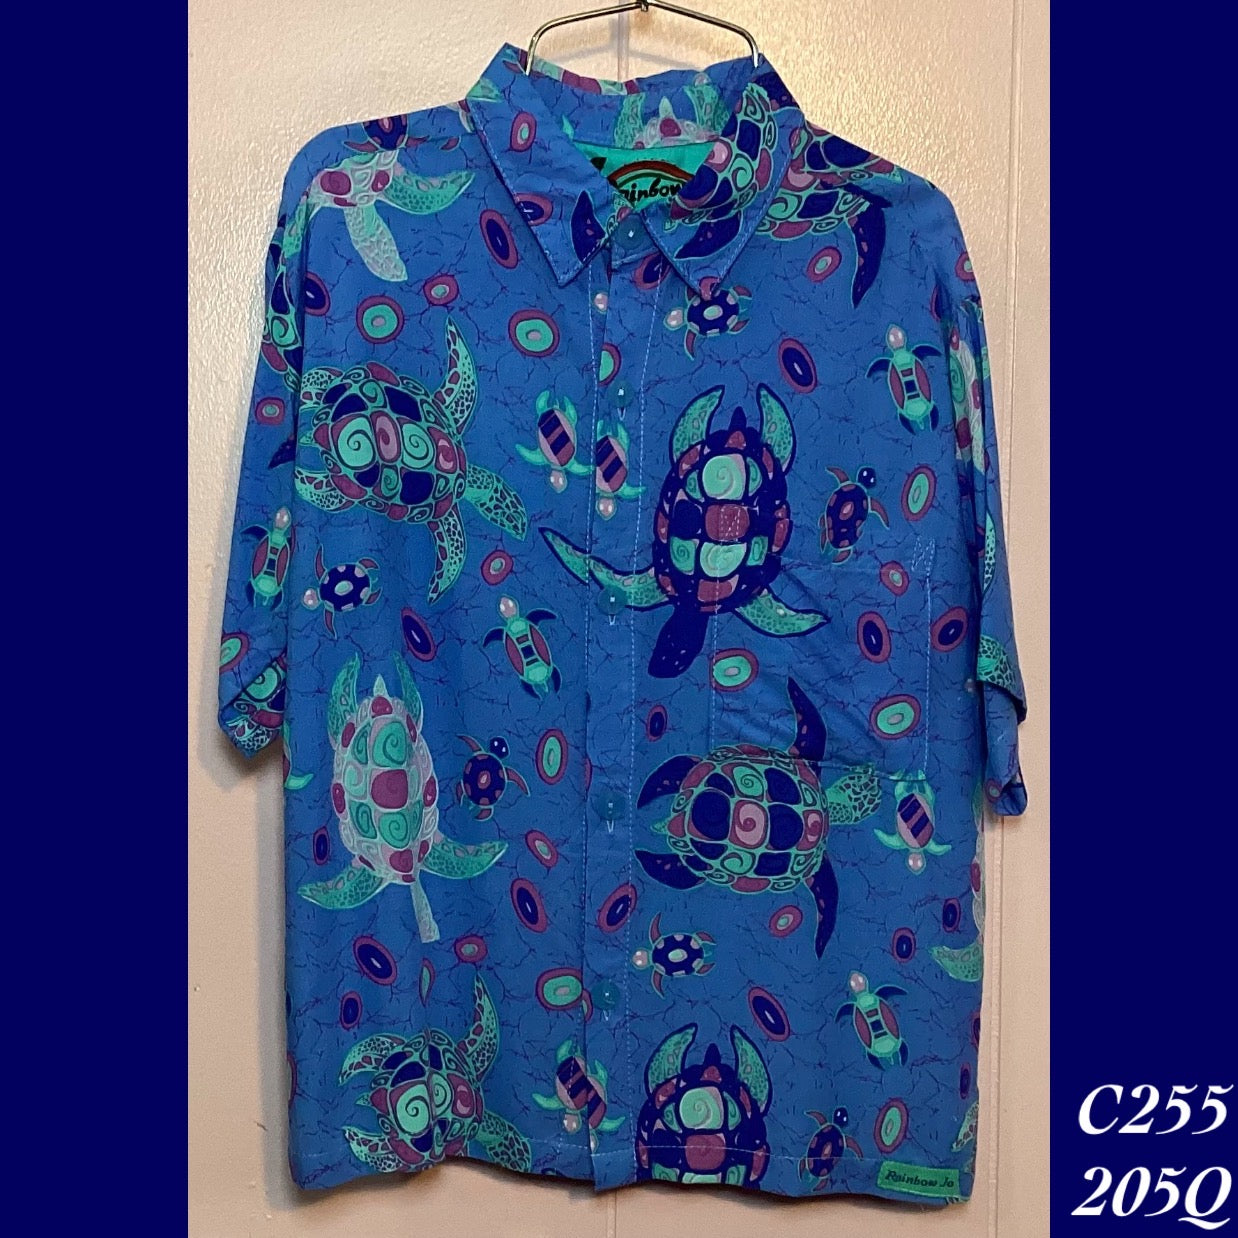 C255 - 205Q , Boy's Aloha shirt